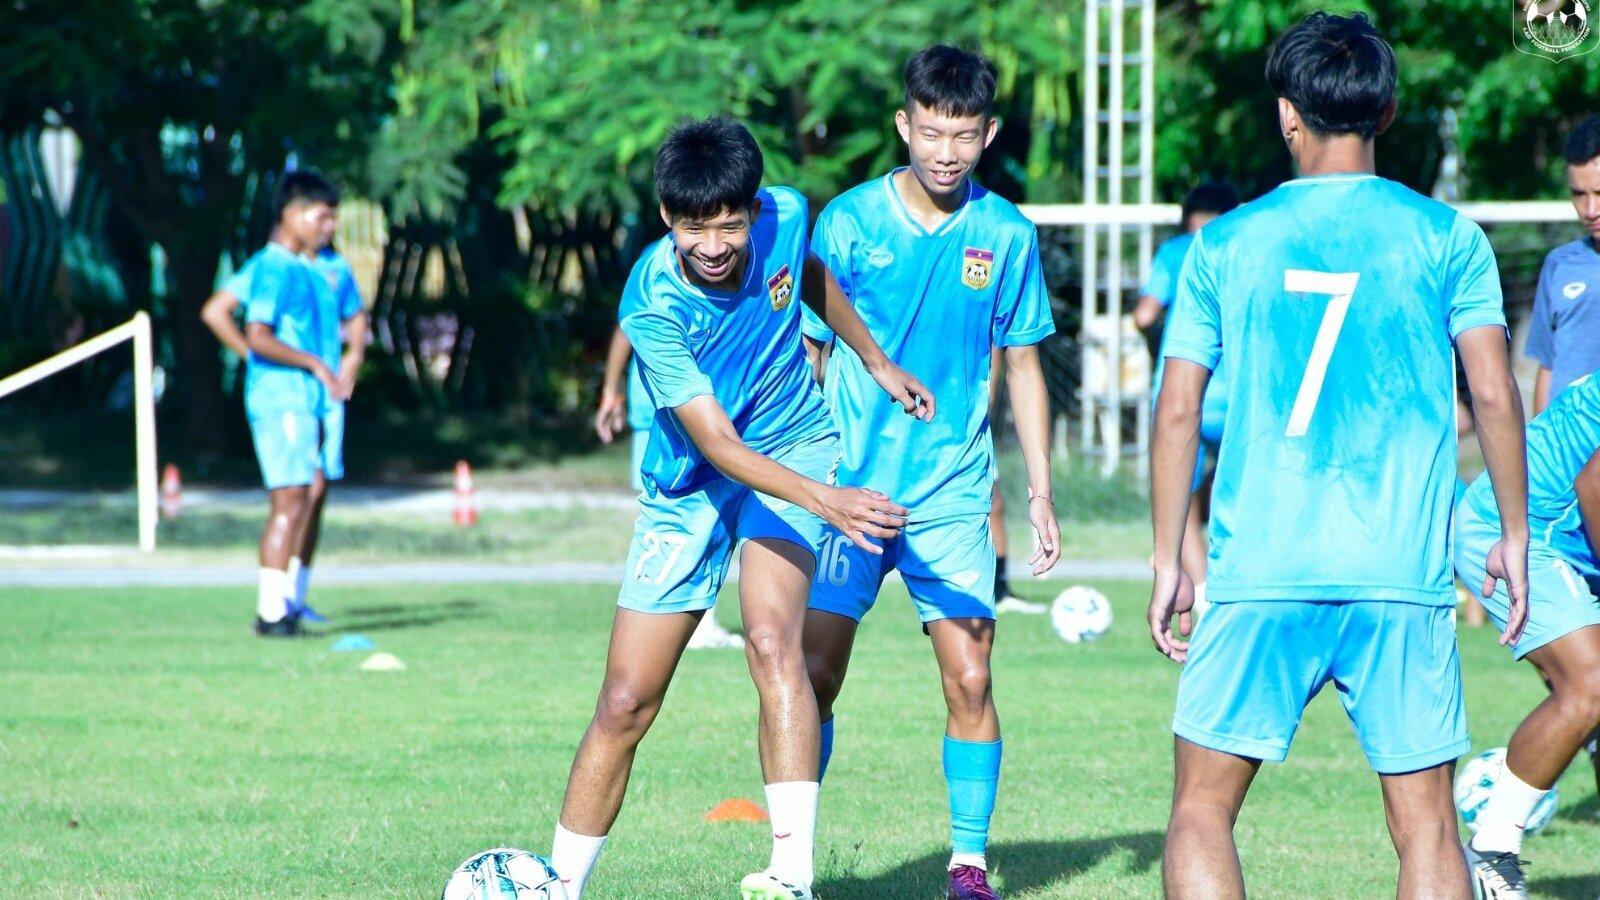 U23 Lào có quyết tâm cao trong giải đấu này nhờ sự tiến bộ vượt trội ở các giải trẻ khác (nguồn ảnh: Internet)